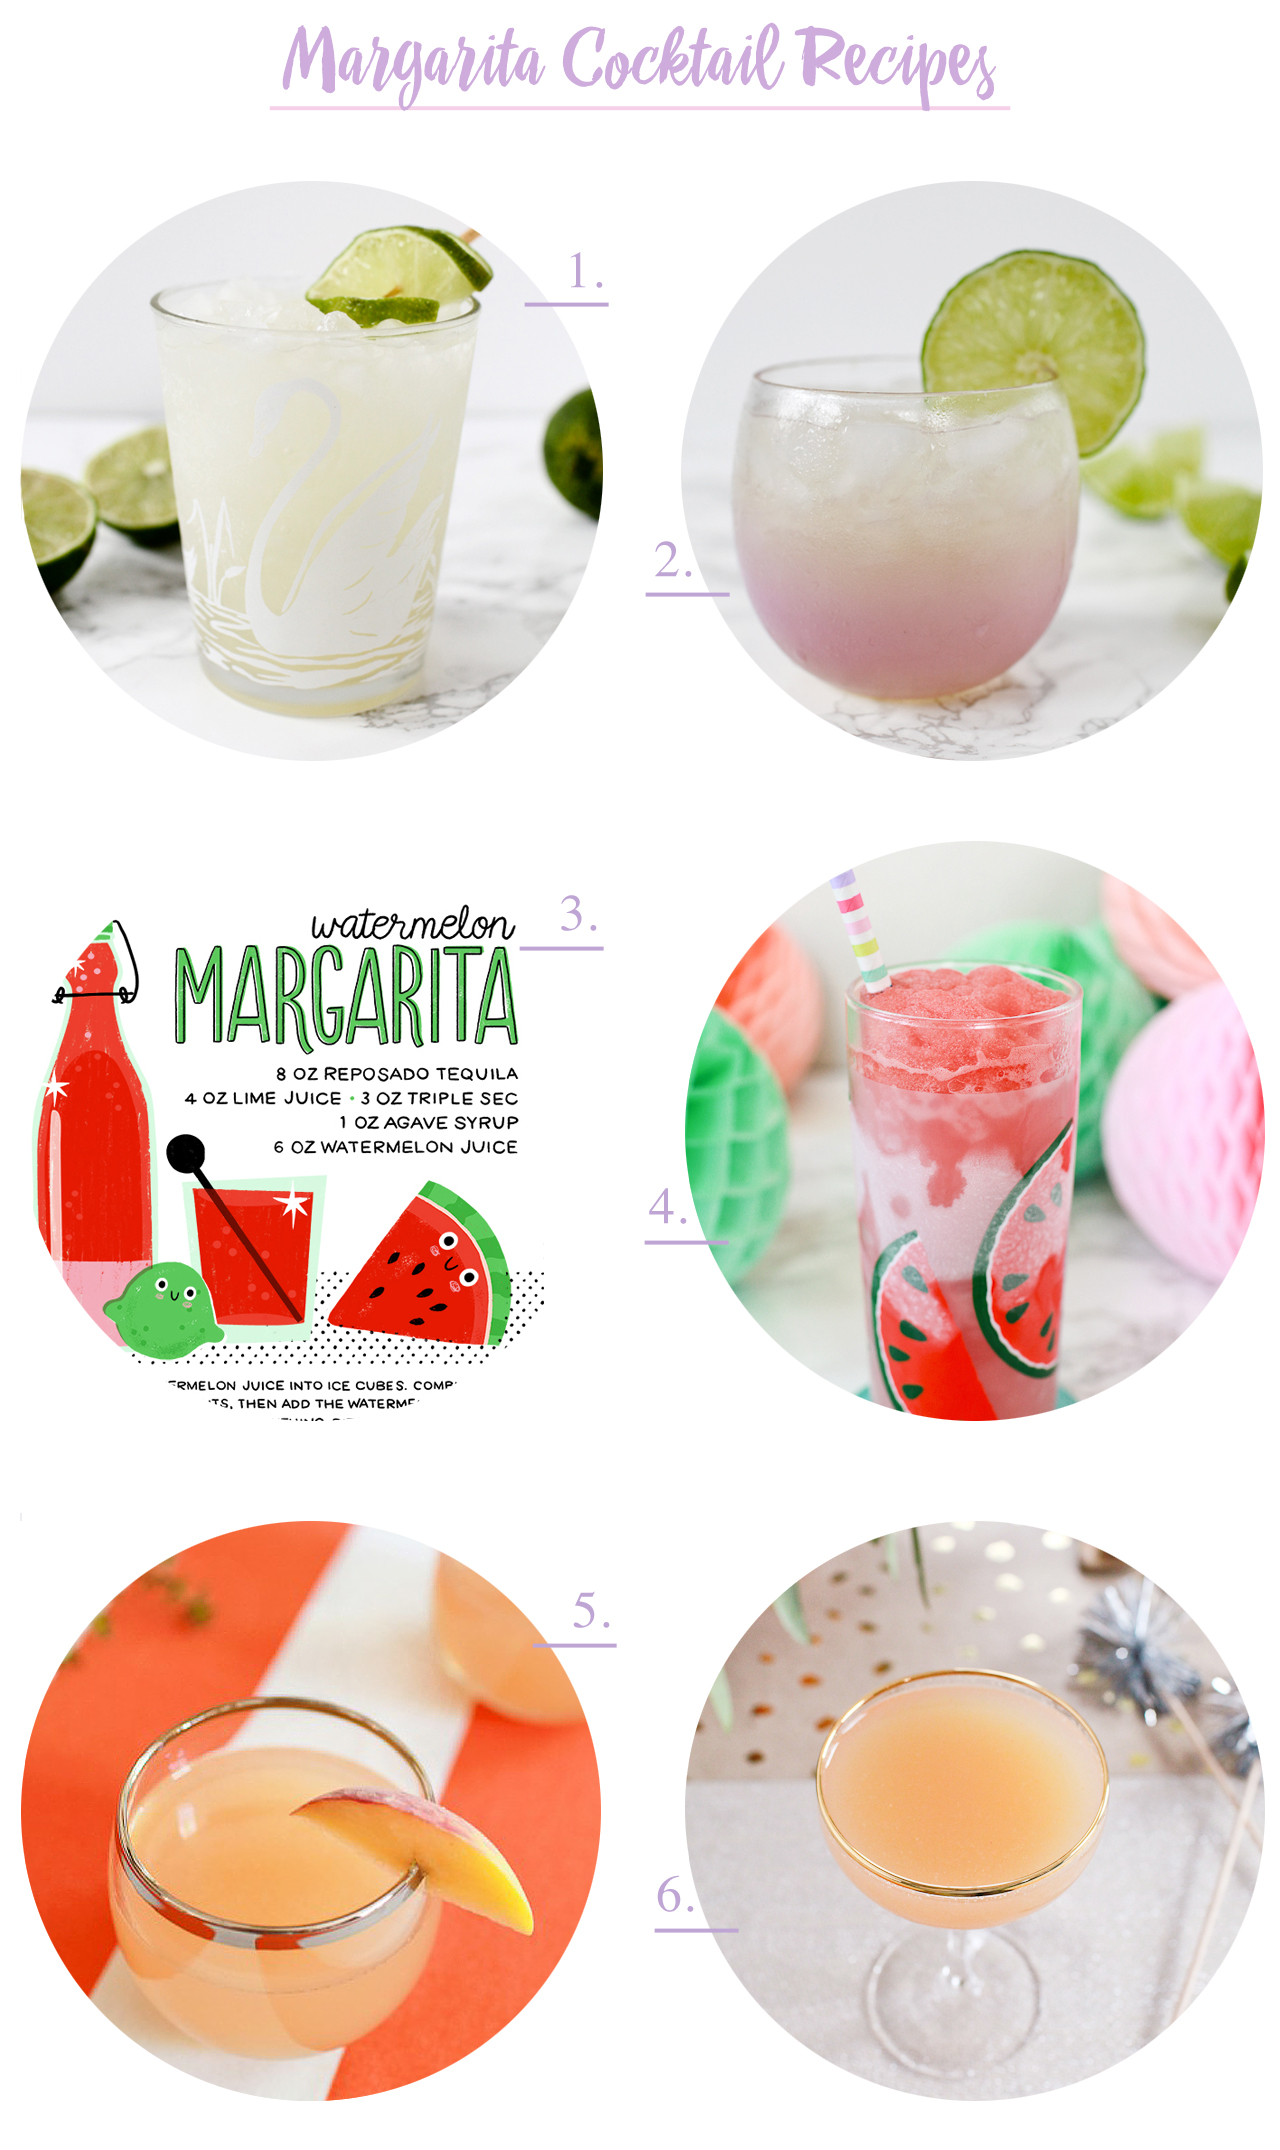 Margarita Cocktail Recipes